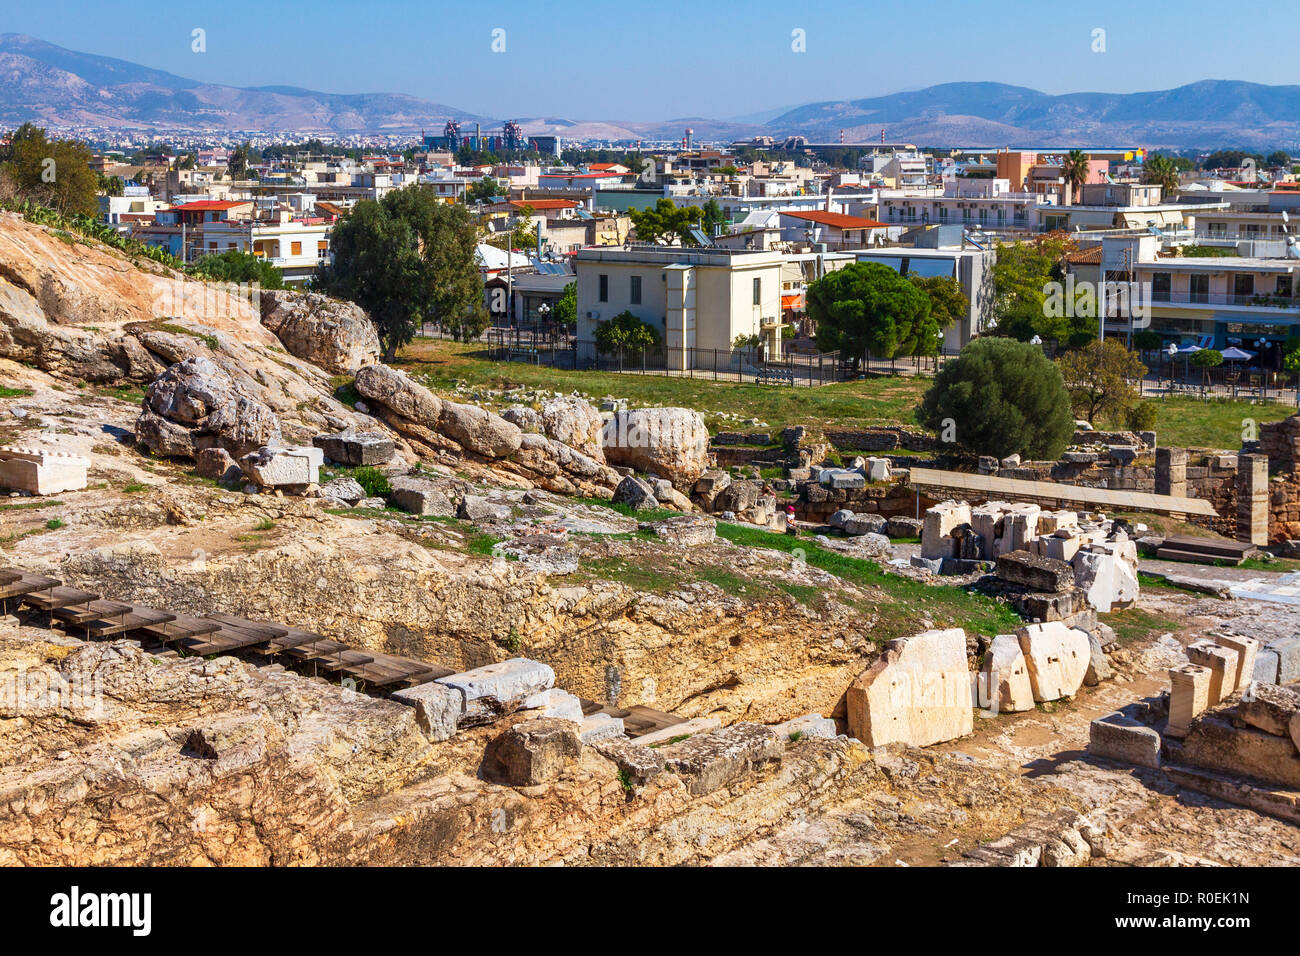 Die archäologische Stätte von Eleusis (oder Eleusina), eine heilige Stätten des antiken Griechenland. Es war die Stadt der Demeter, Göttin der Landwirtschaft. Stockfoto